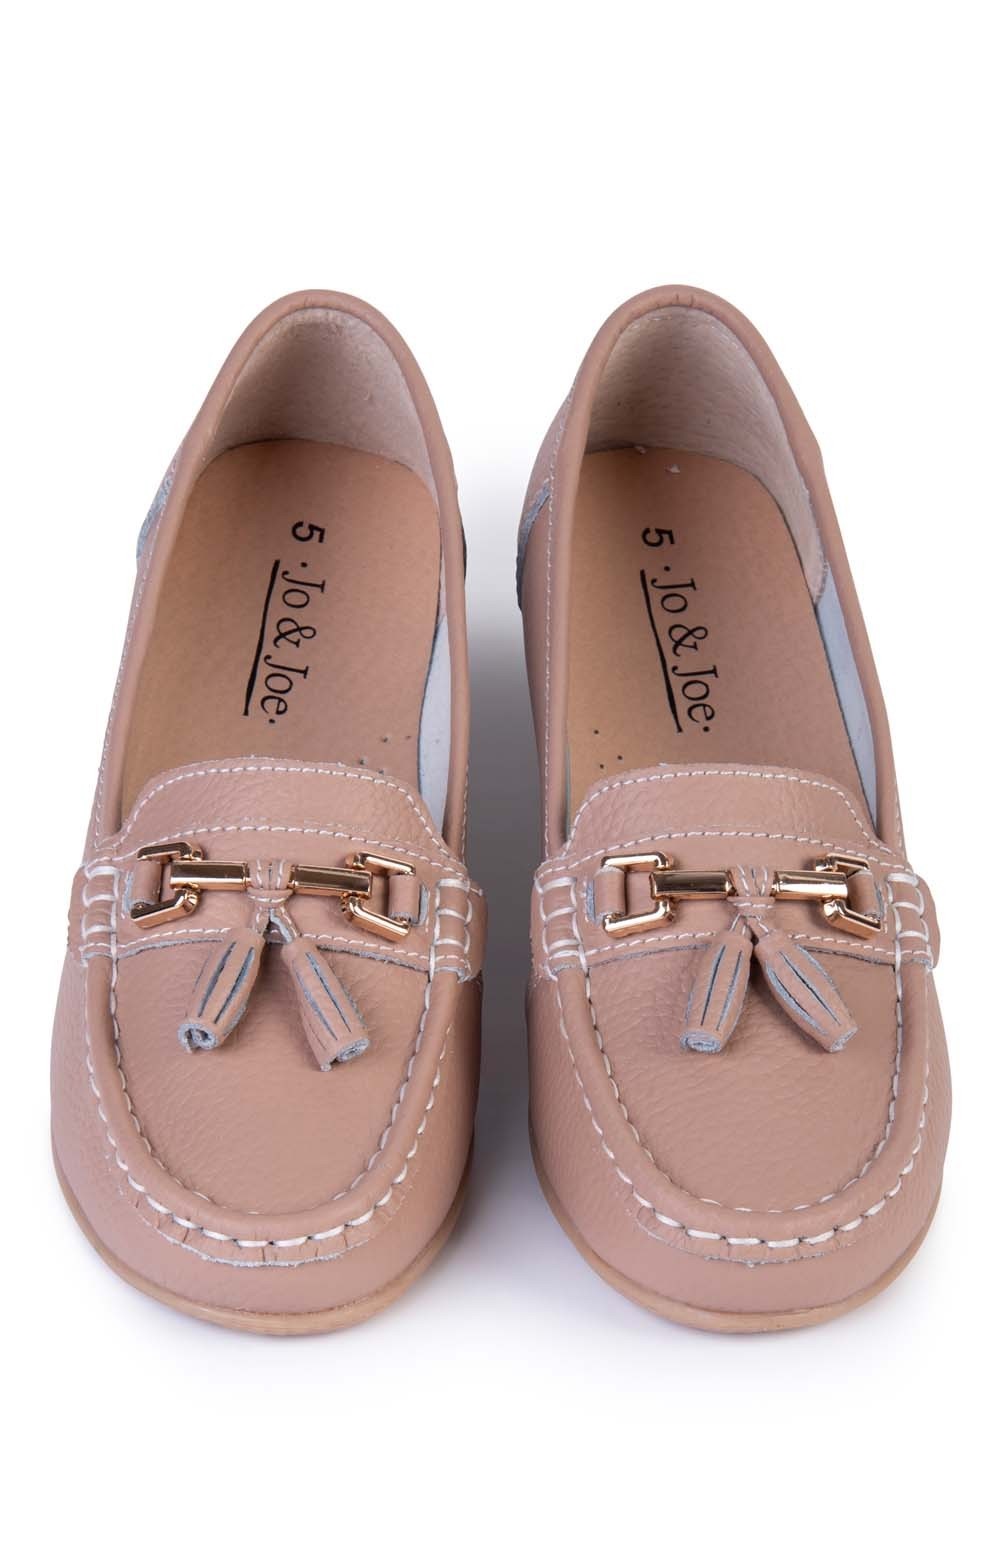 Women's Jo & Joe Nautical Leather Tassel Loafer Shoes - Mocha Pink